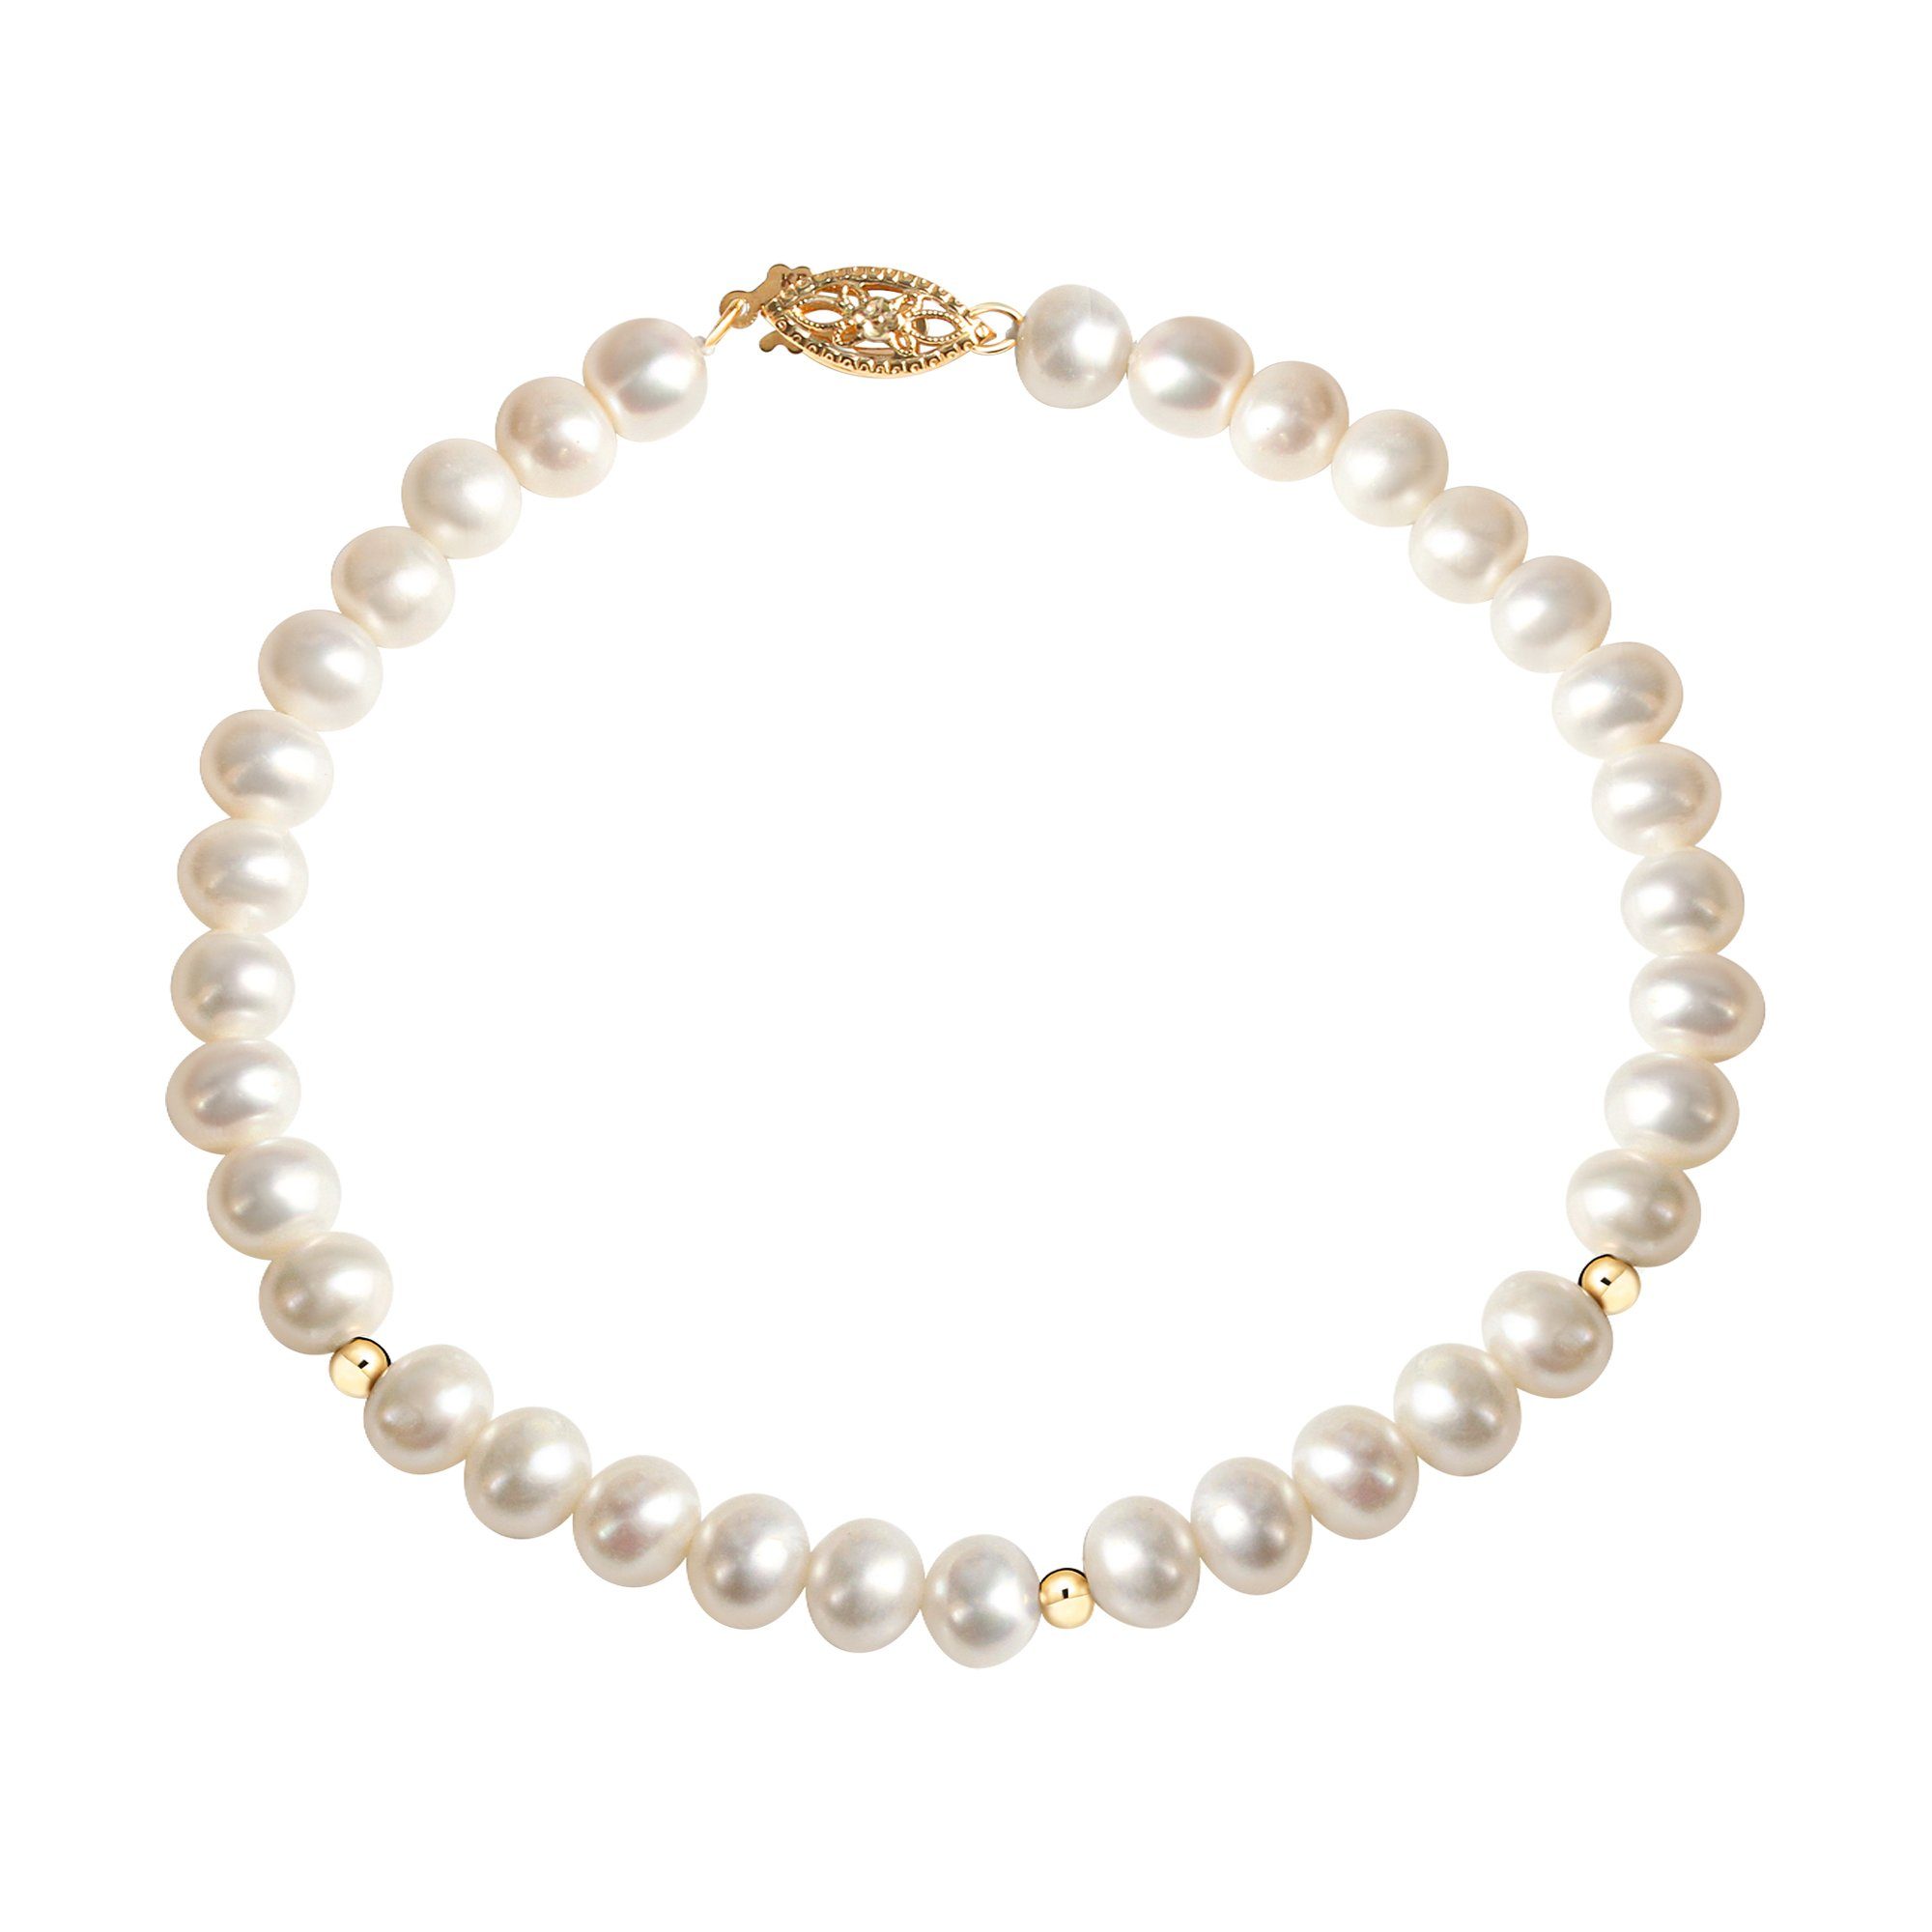 Fascination by Ellen K. Armband Gold 585 mit weißen Perlen 20cm